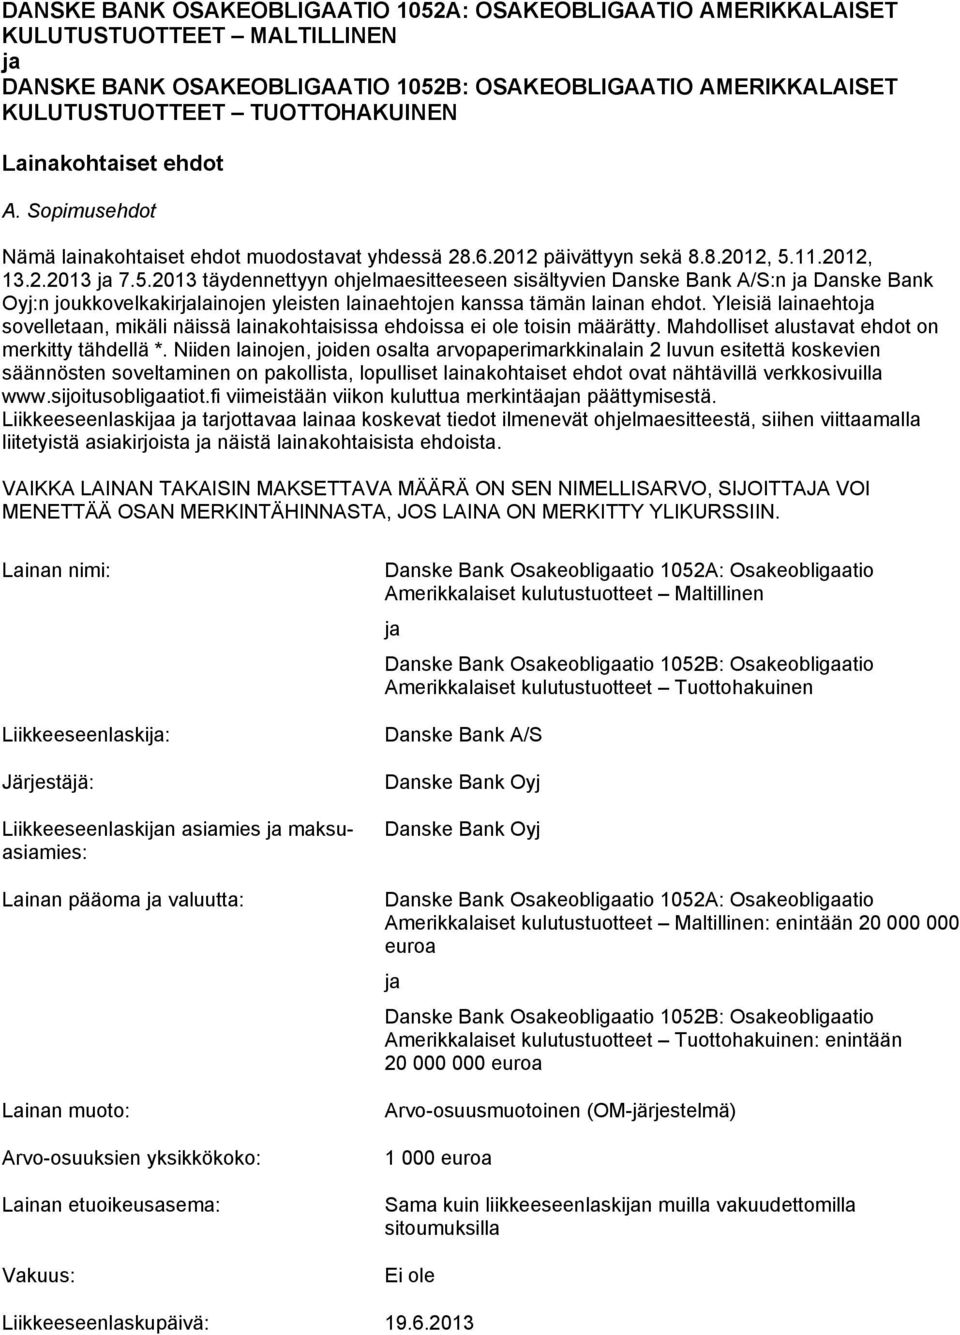 11.2012, 13.2.2013 ja 7.5.2013 täydennettyyn ohjelmaesitteeseen sisältyvien Danske Bank A/S:n ja Danske Bank Oyj:n joukkovelkakirjalainojen yleisten lainaehtojen kanssa tämän lainan ehdot.